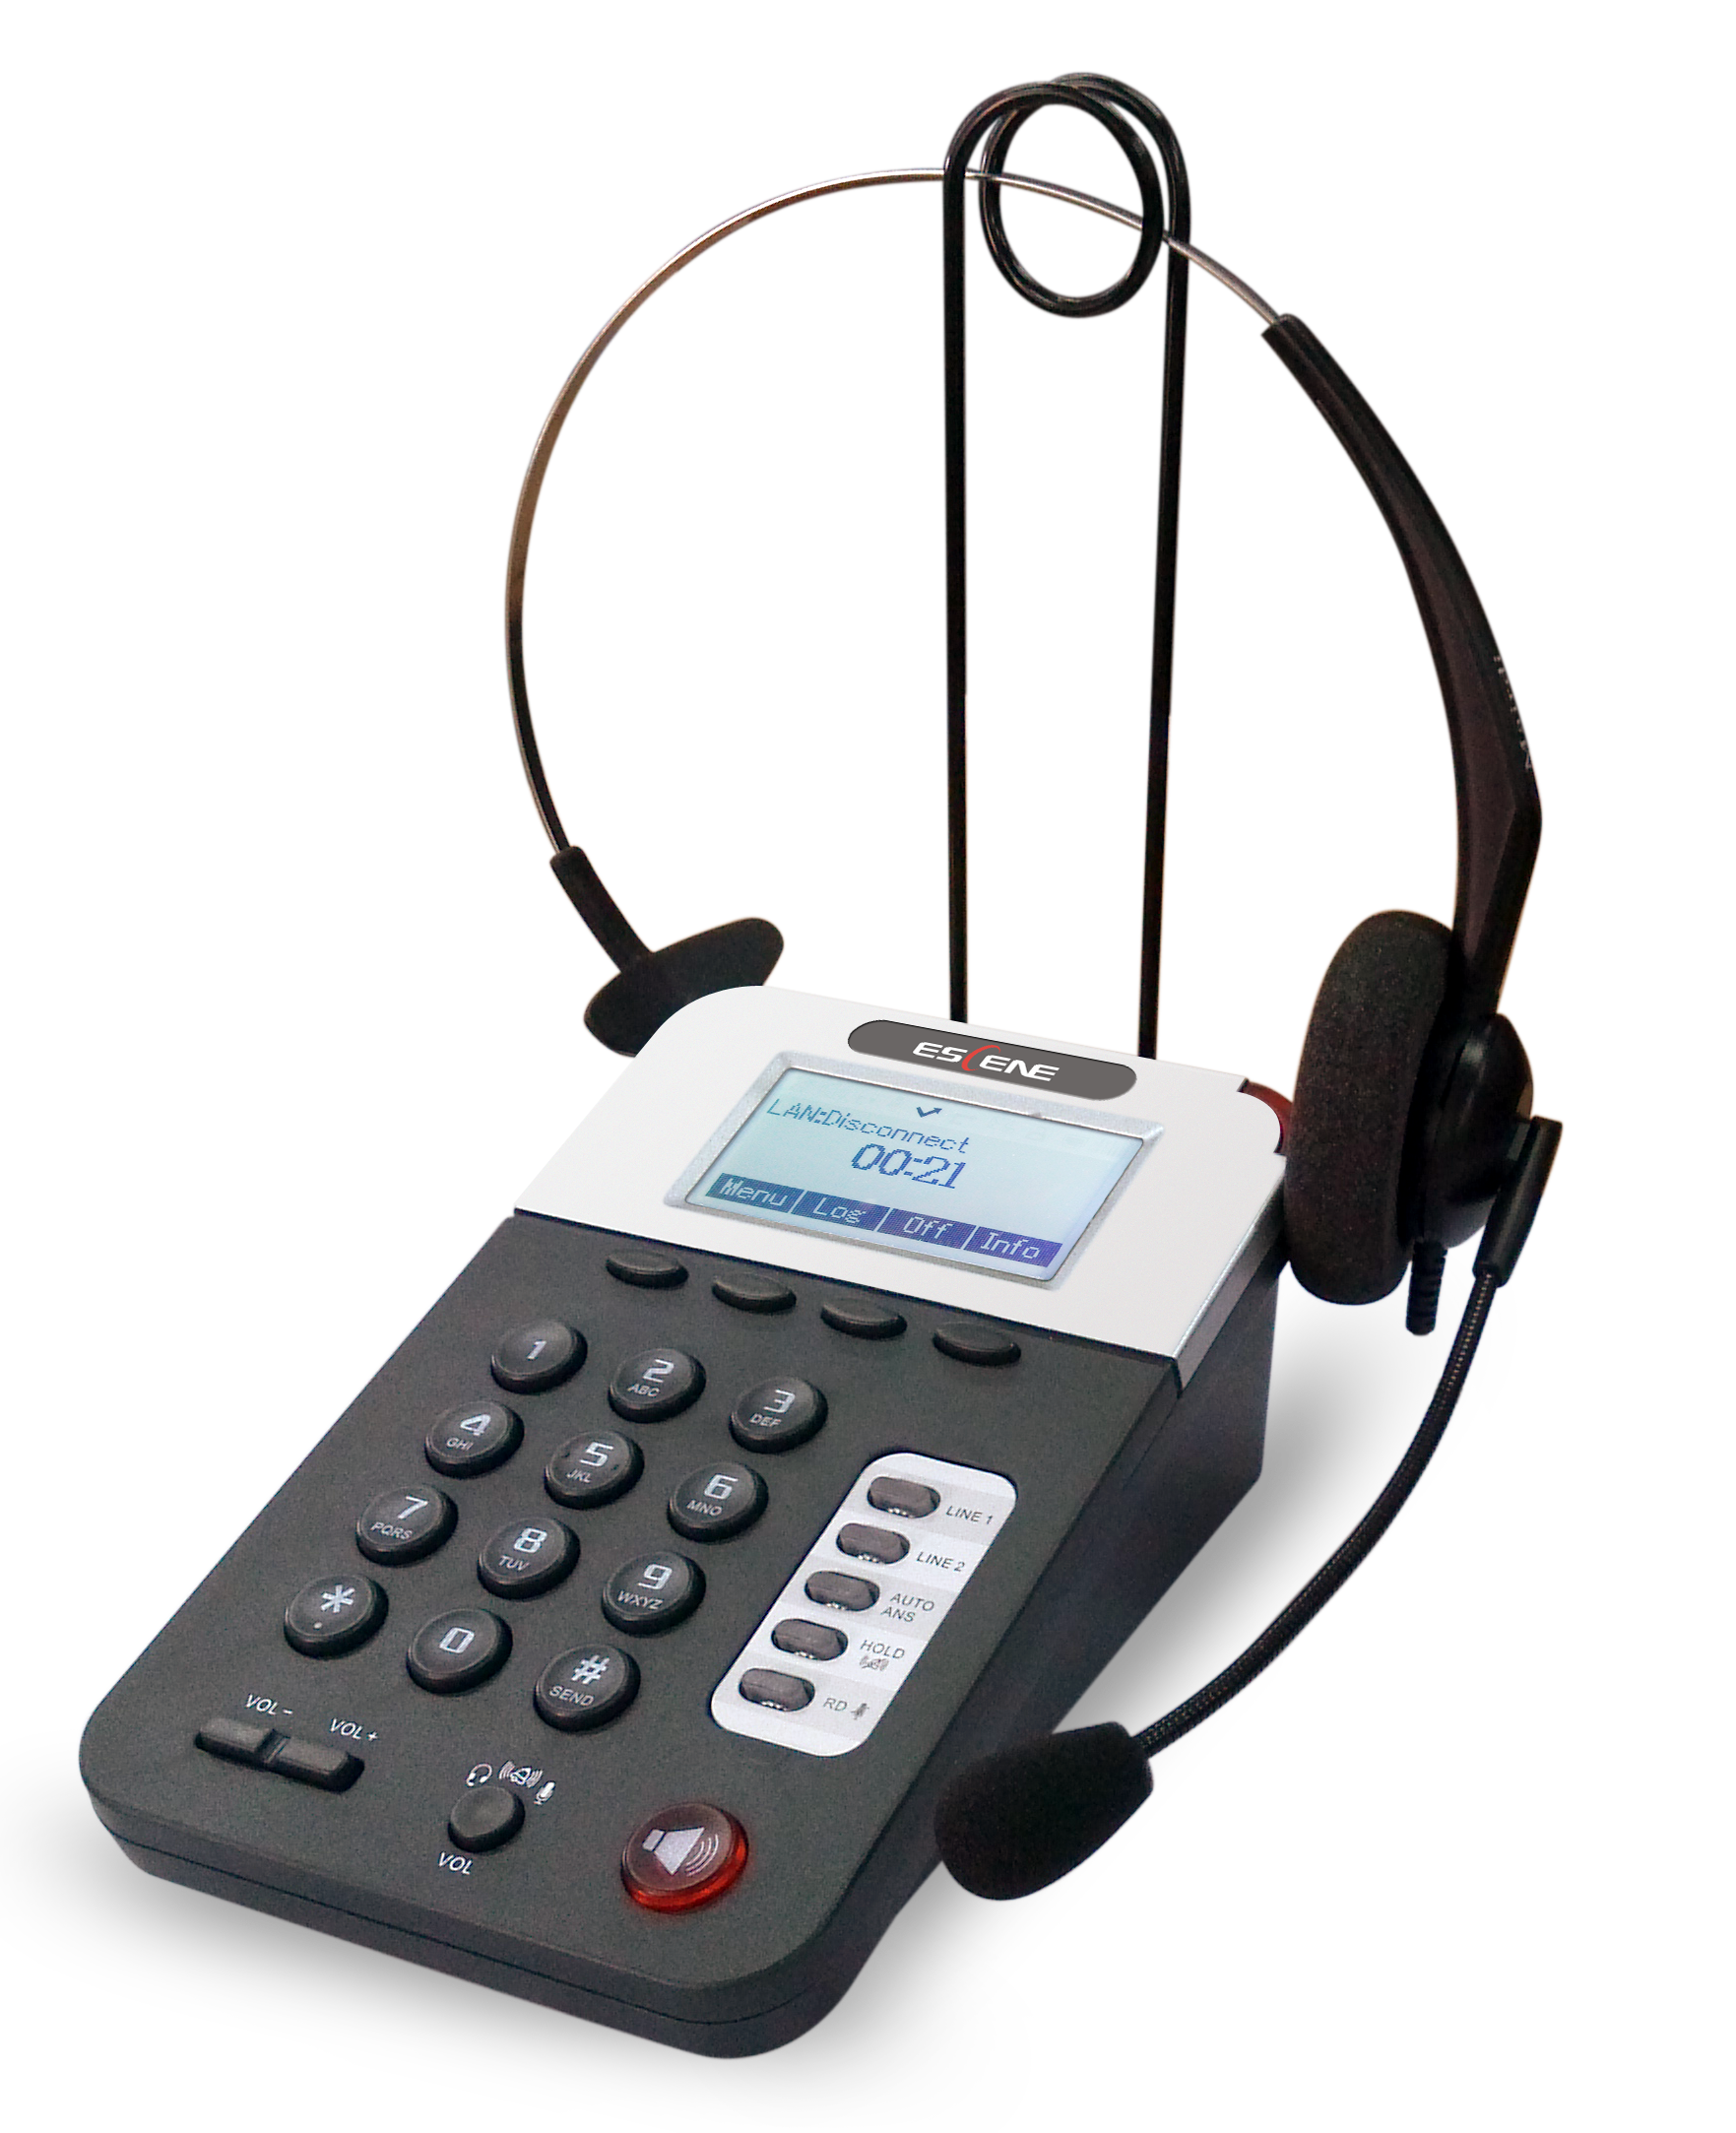 IP-телефоны для call-центра станут отличным средством связи